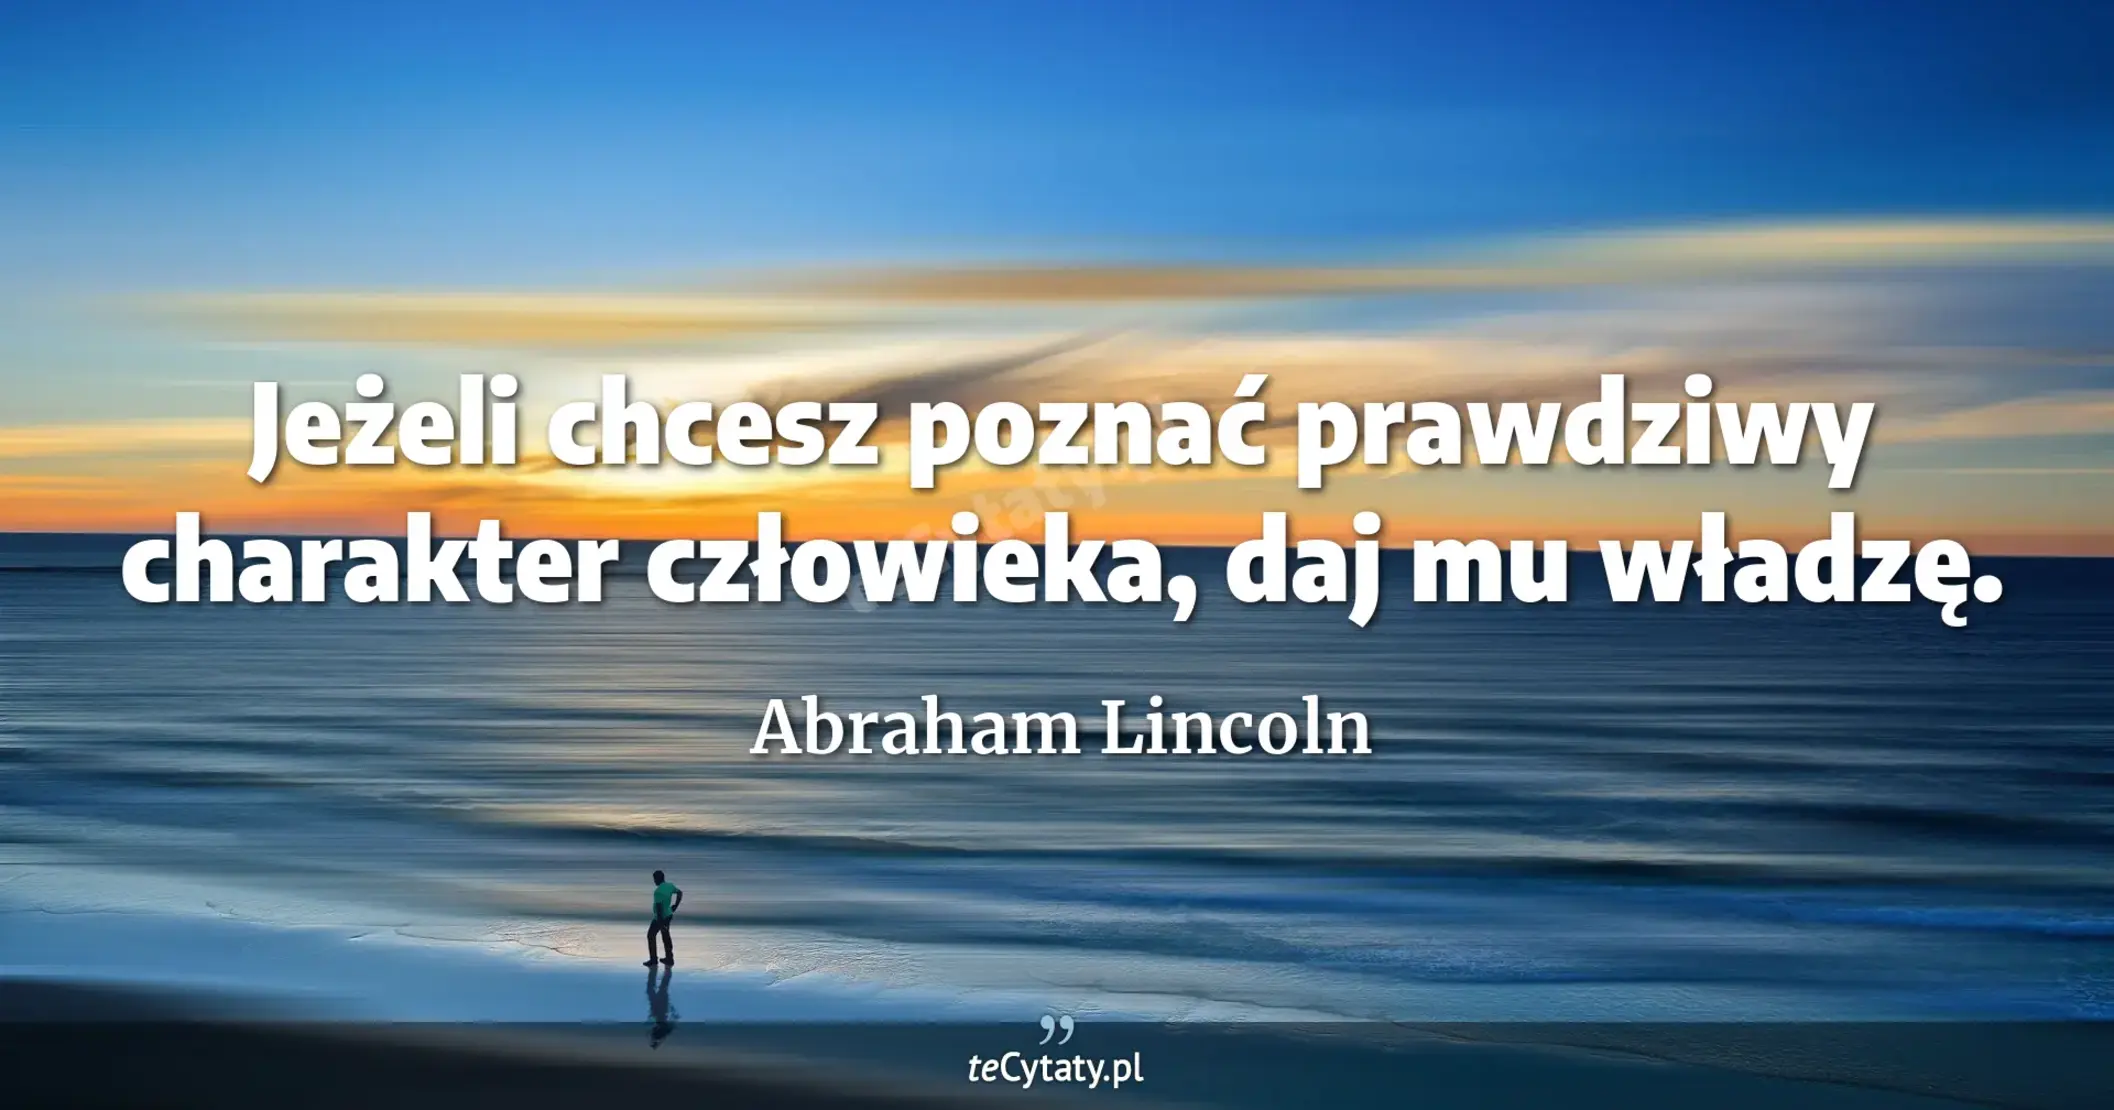 Jeżeli chcesz poznać prawdziwy charakter człowieka, daj mu władzę. - Abraham Lincoln